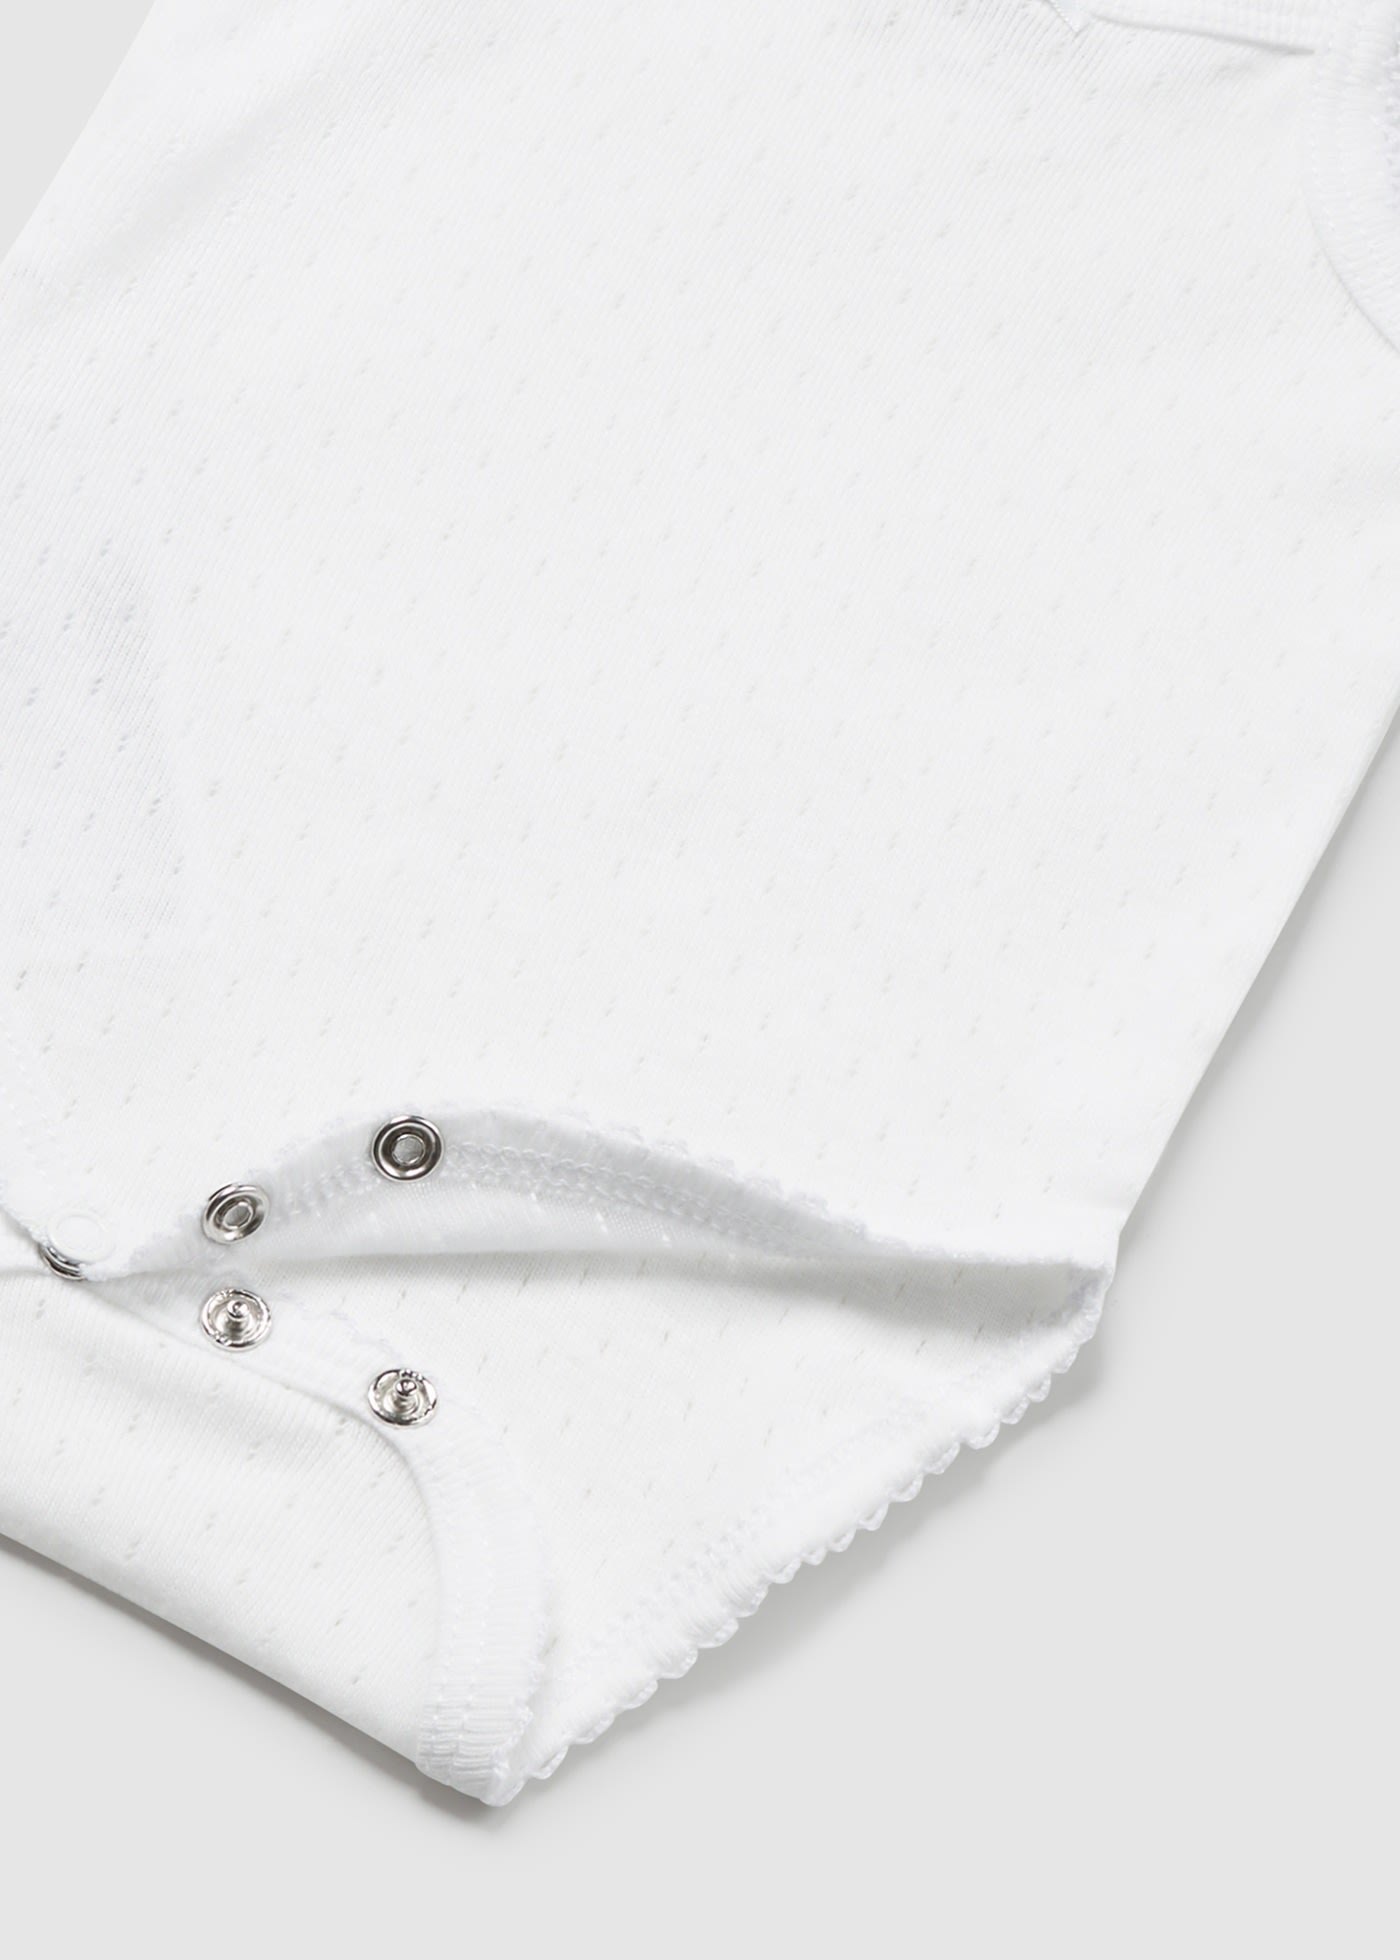 Newborn Bodysuit Openwork Straps Better Cotton